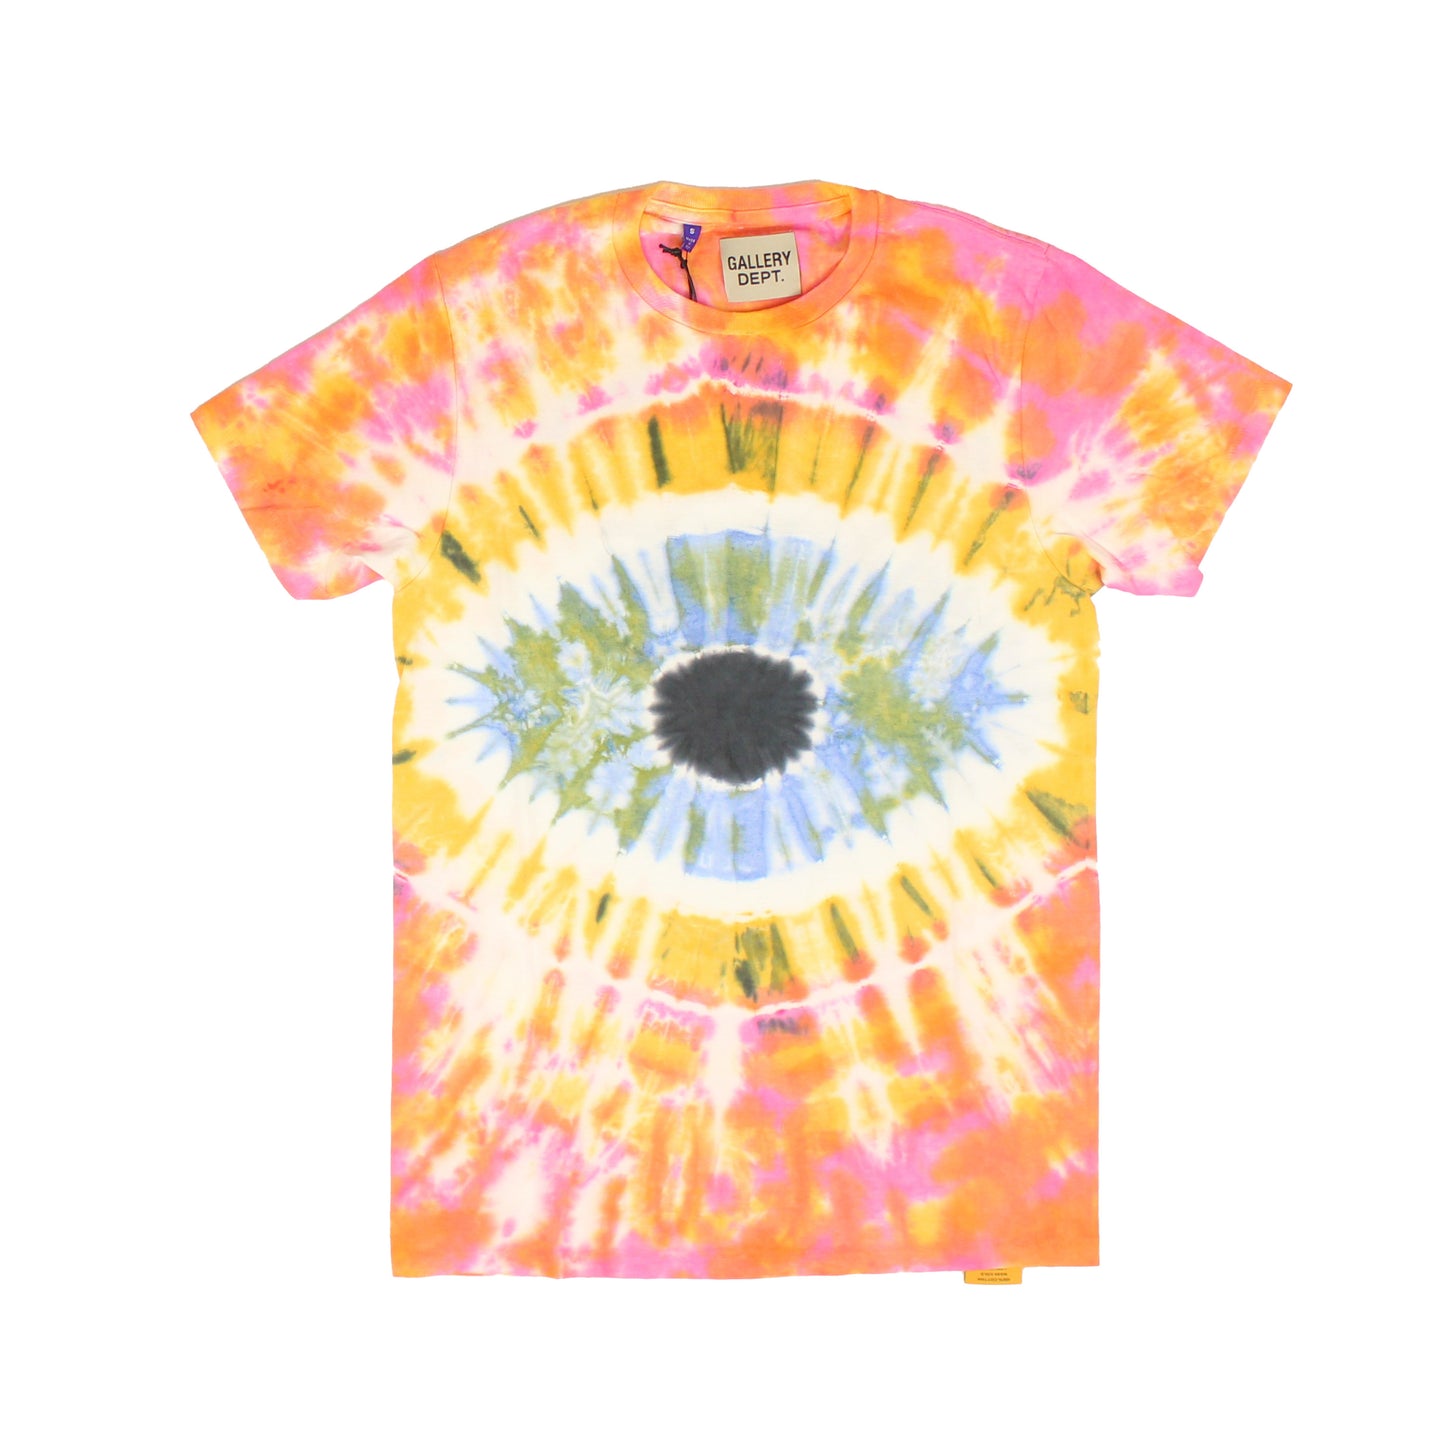 Gallery Dept. Eyeball Glitter Tie Dye T-Shirt - Multi